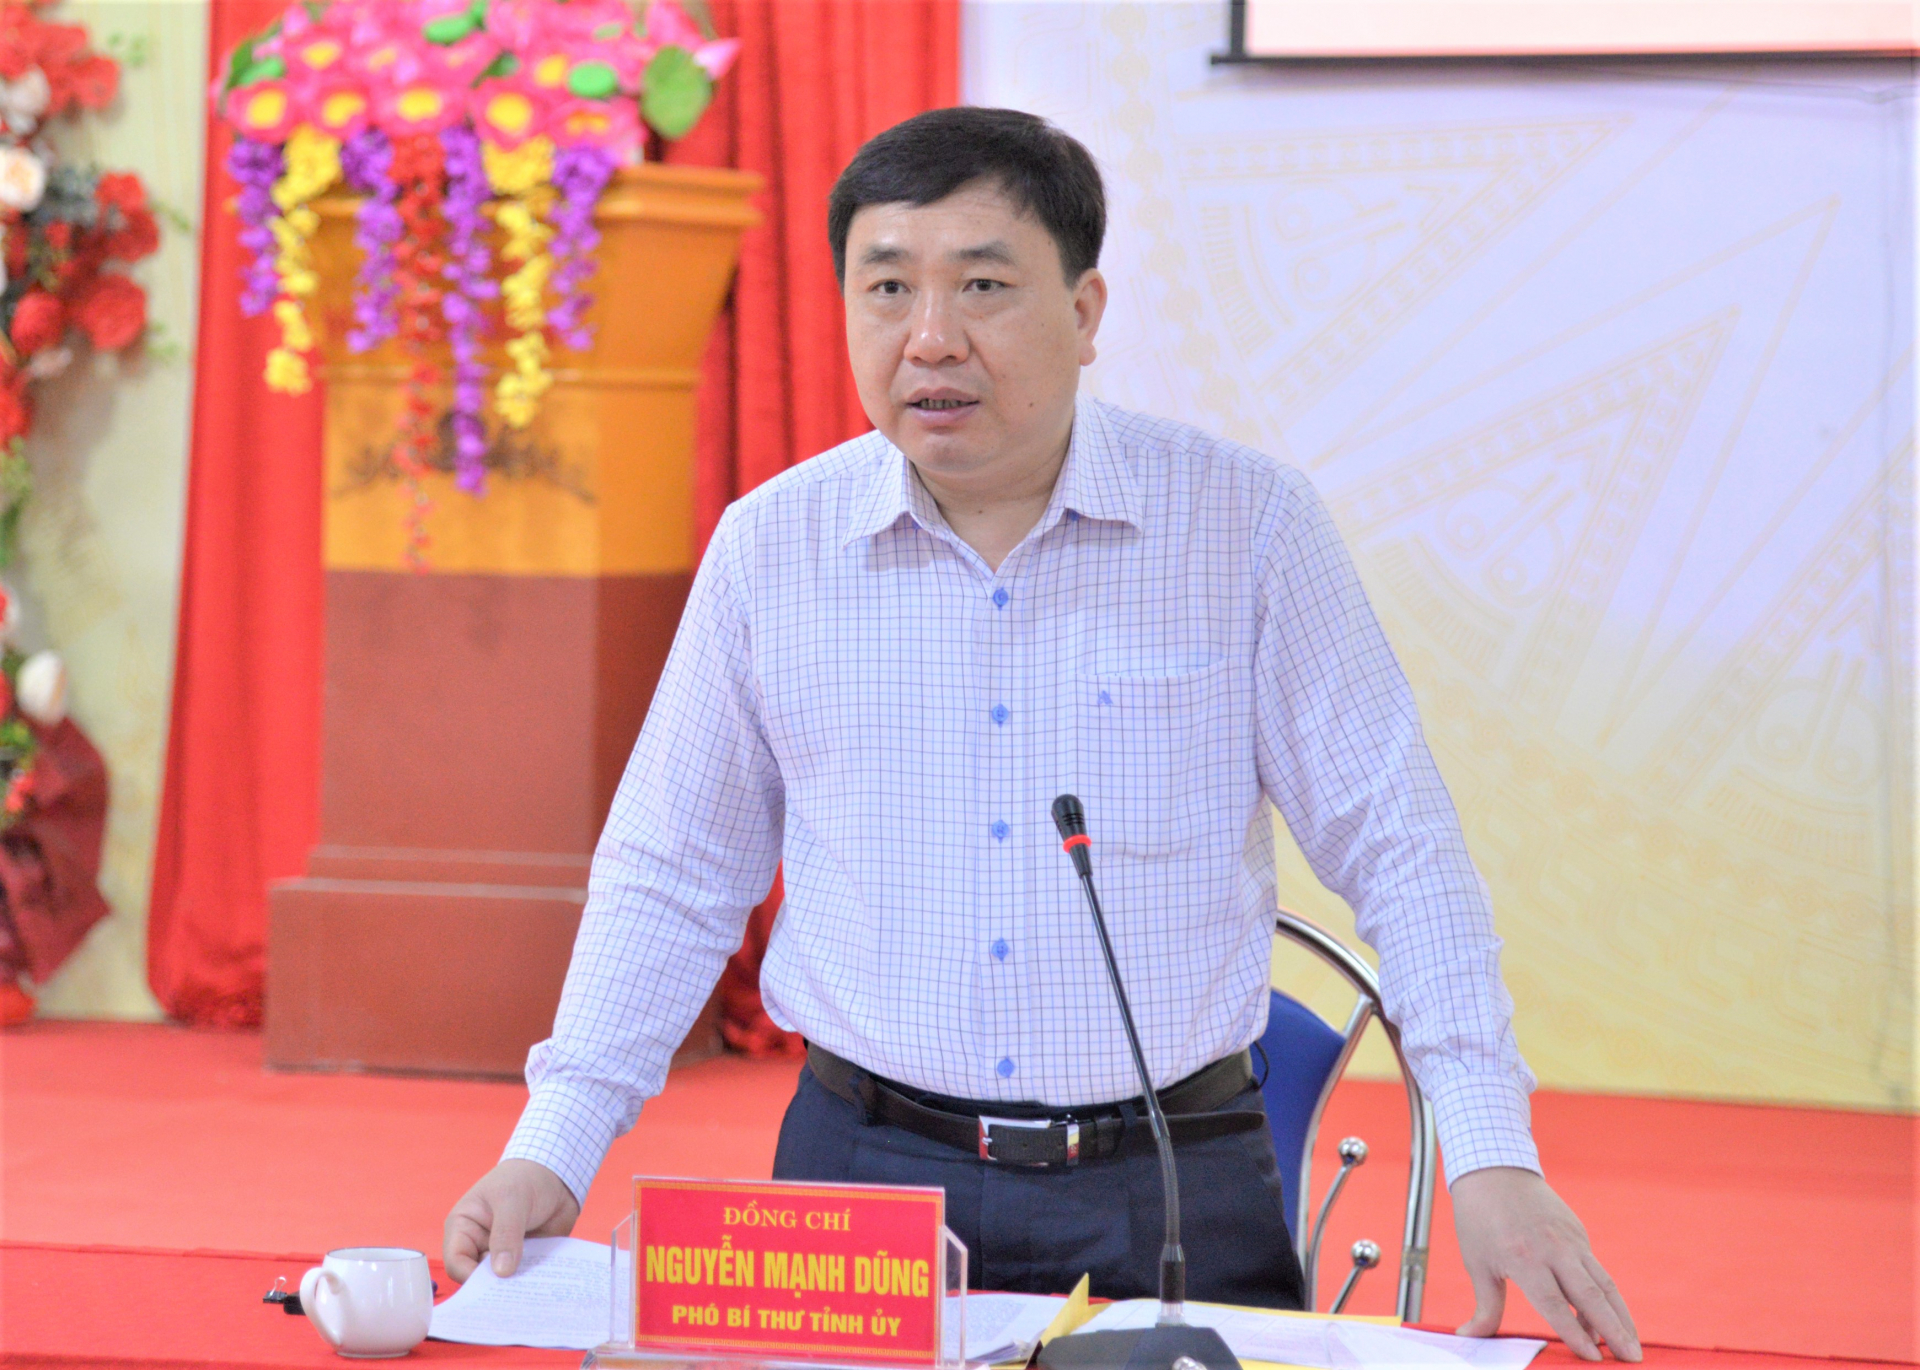 Phó Bí thư Tỉnh ủy Nguyễn Mạnh Dũng phát biểu kết luận tại buổi làm việc với xã Đạo Đức